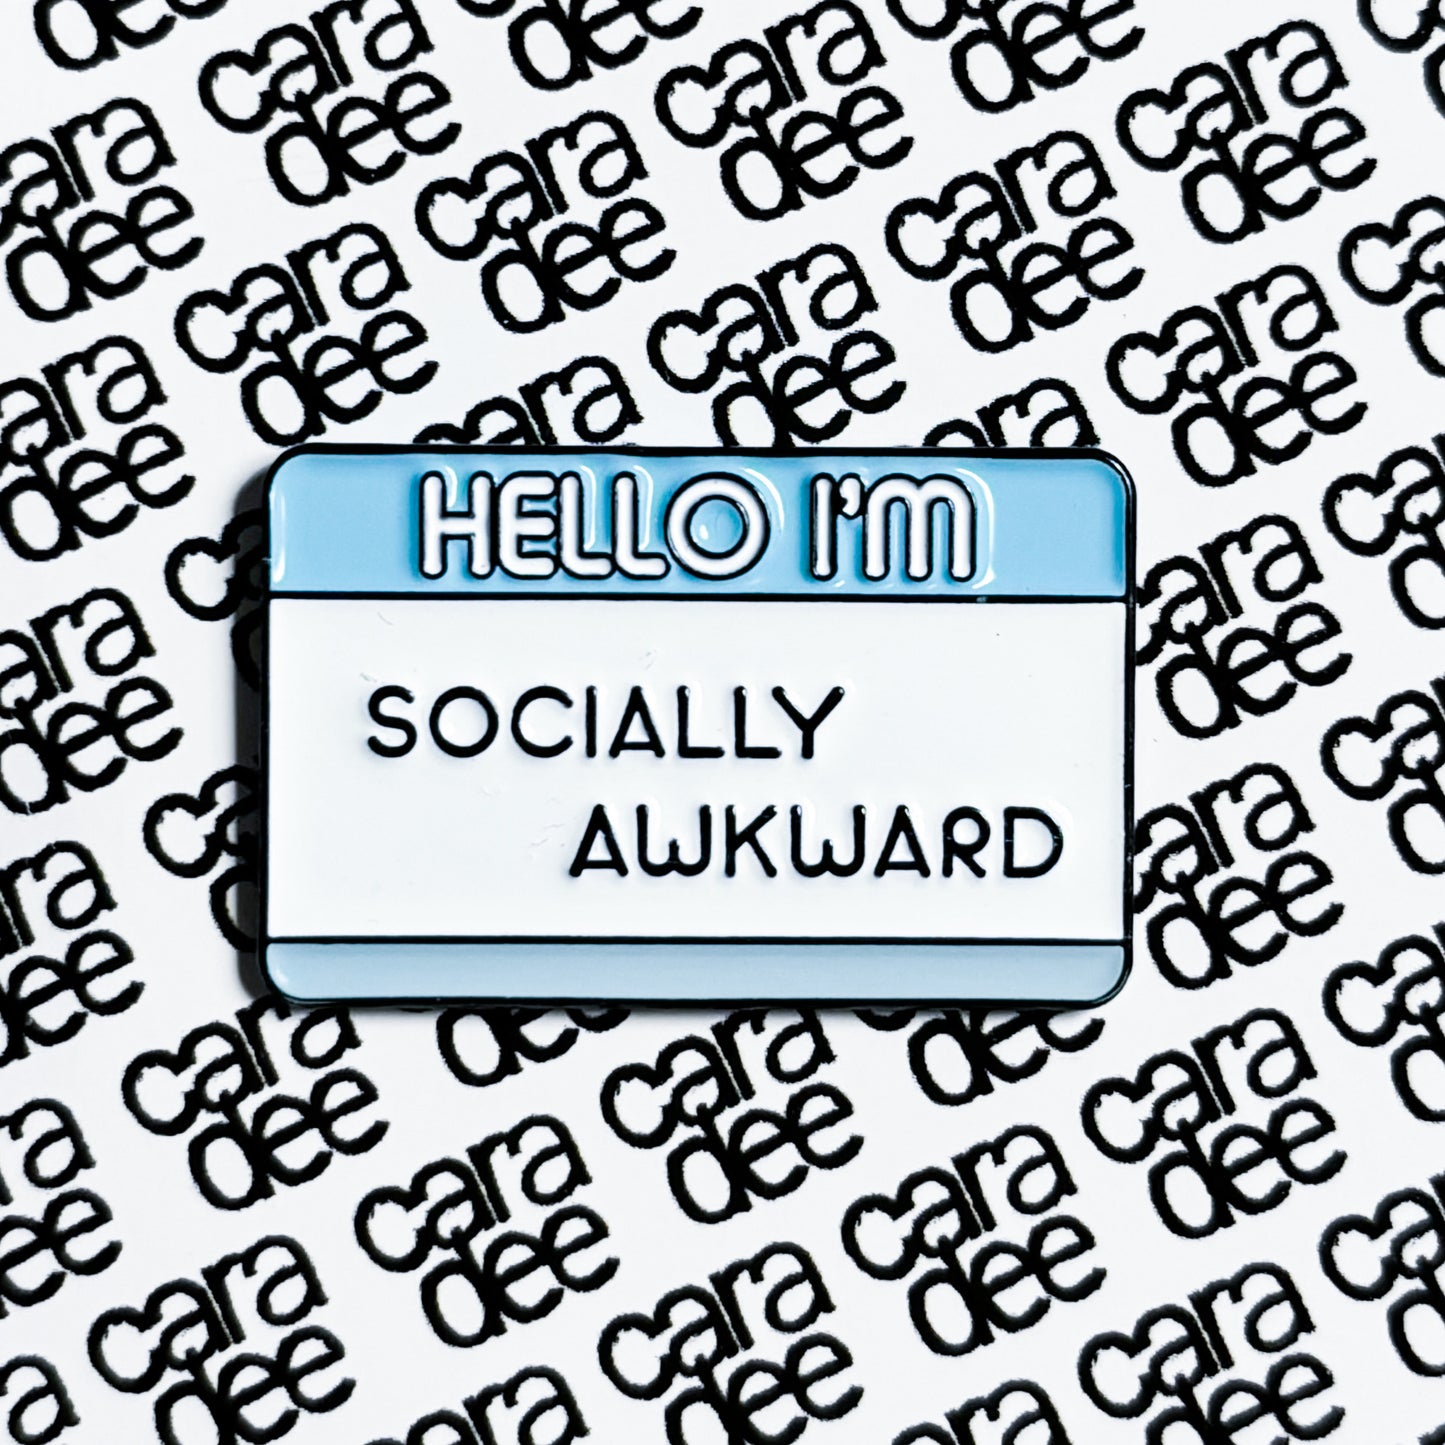 Enamel pin from Parts of Us - Hello I'm socially awkward